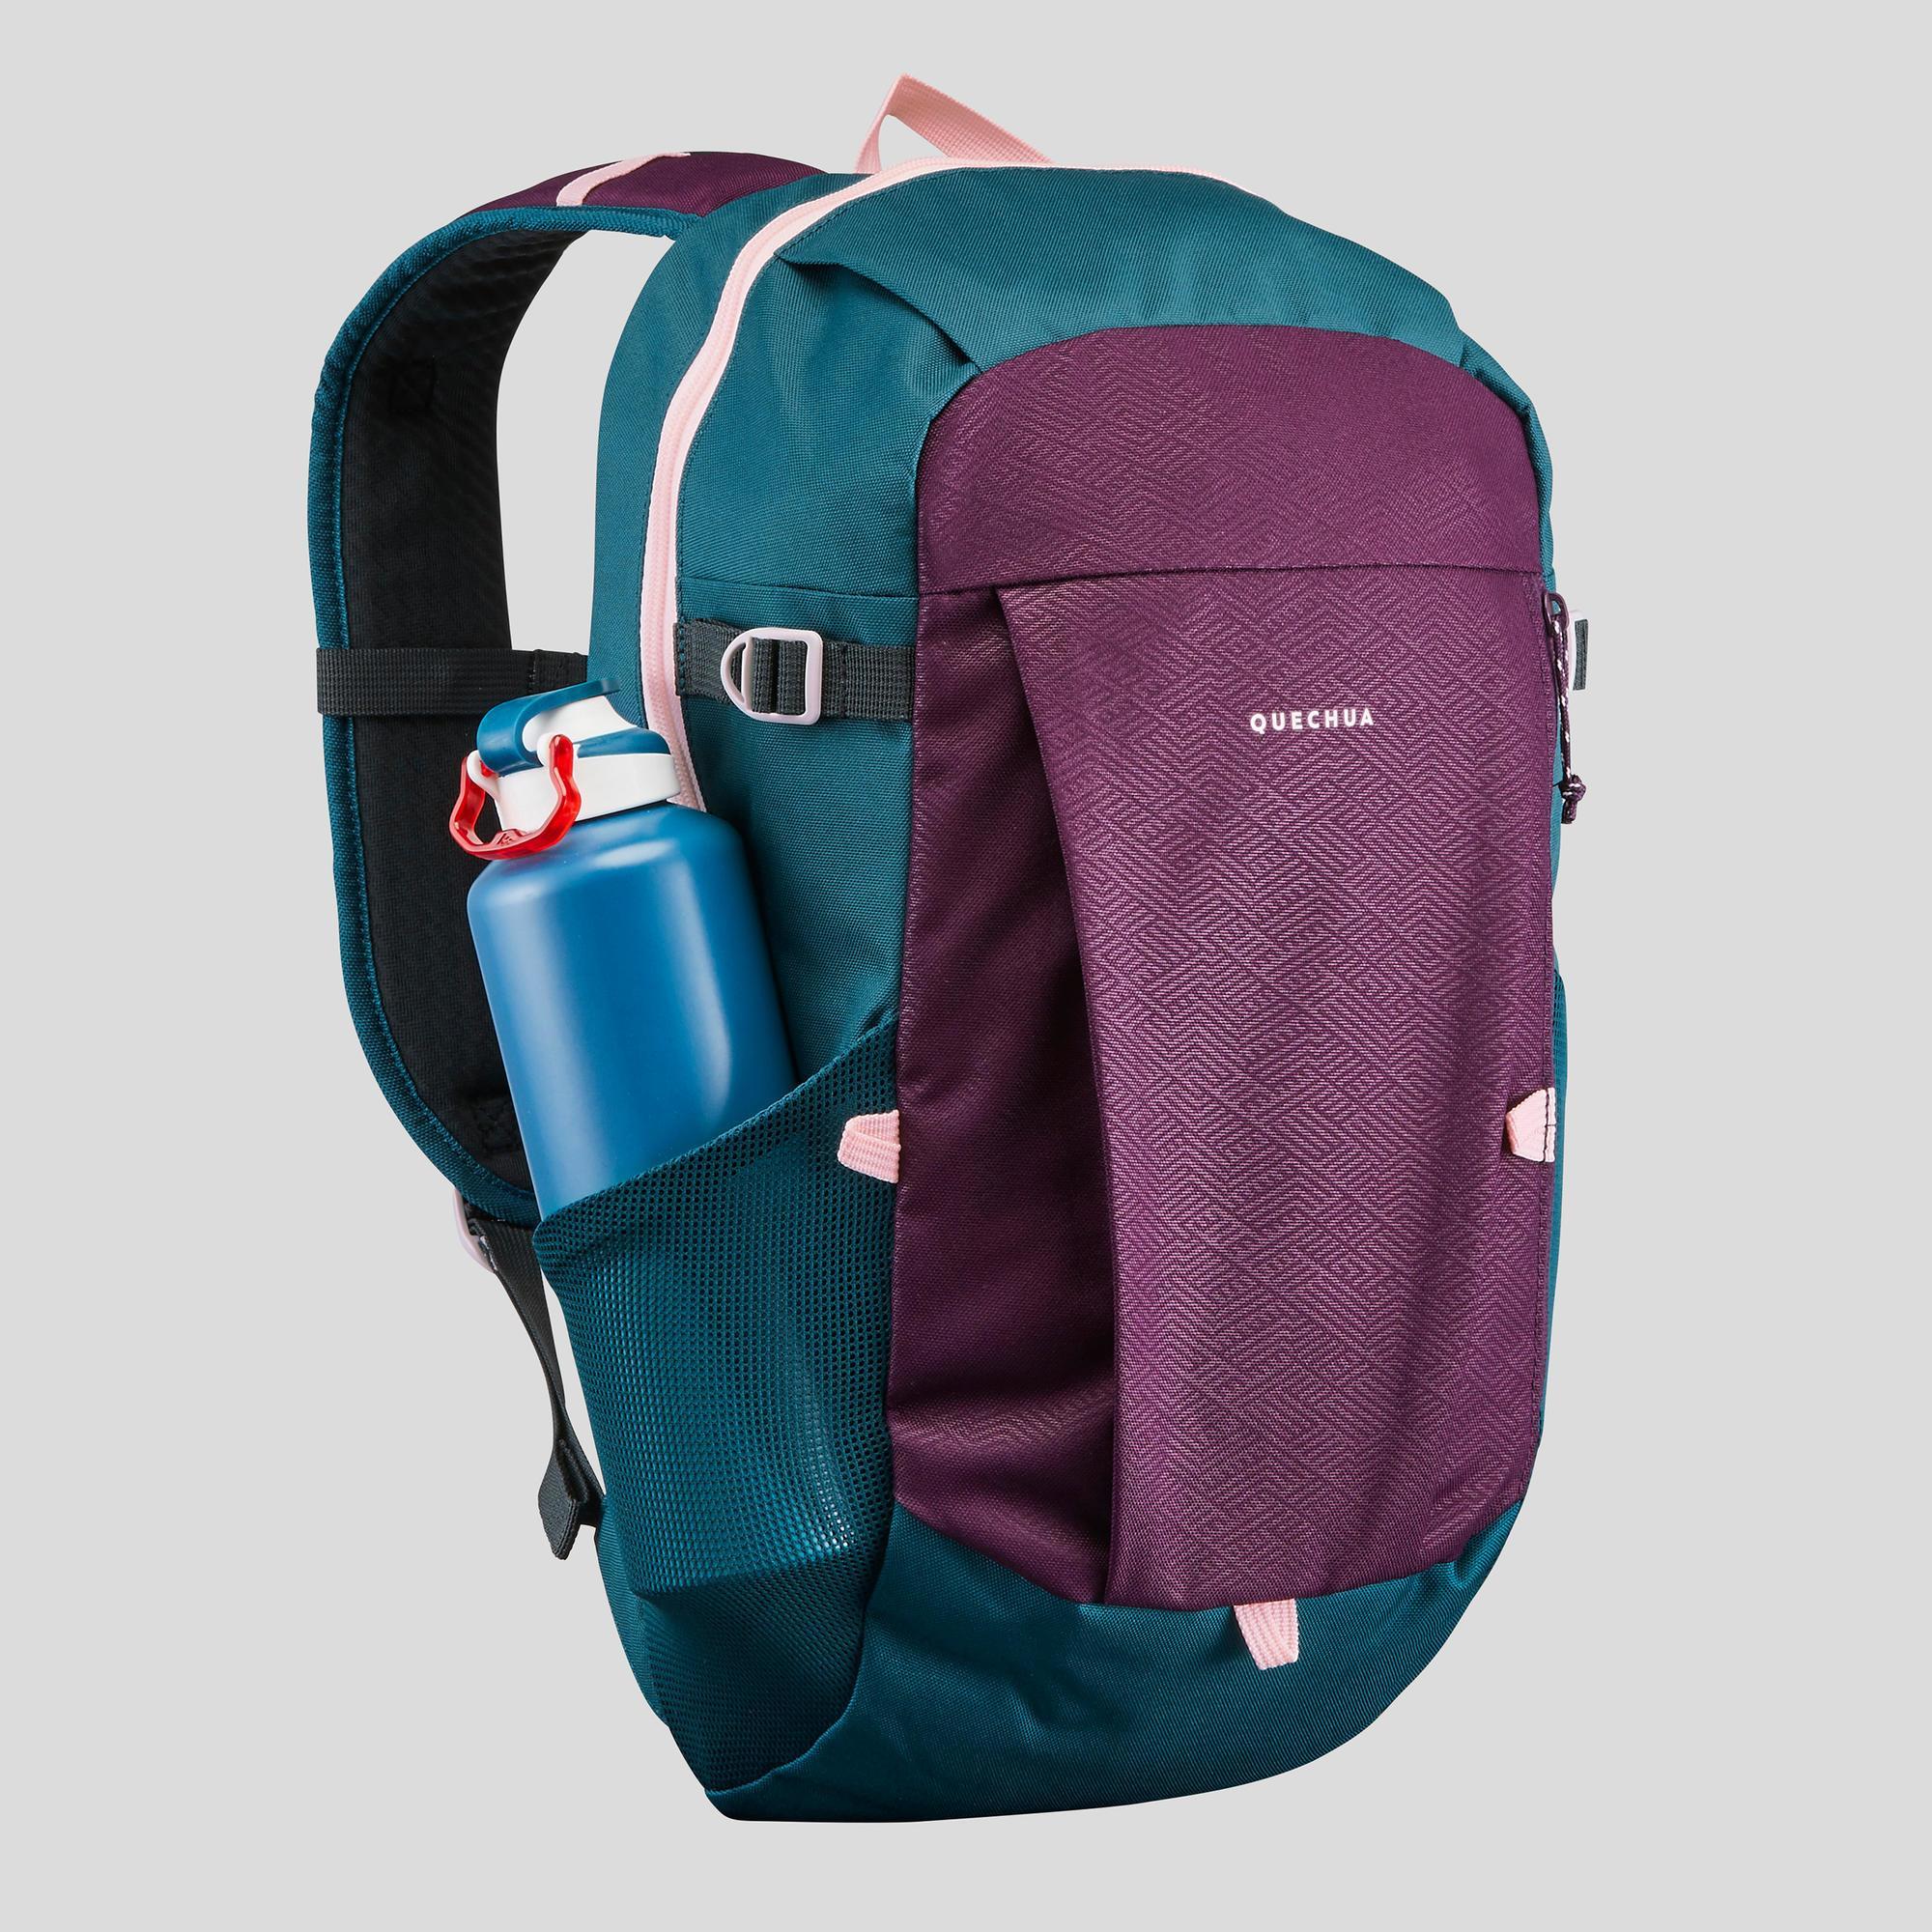 decathlon backpacks uk